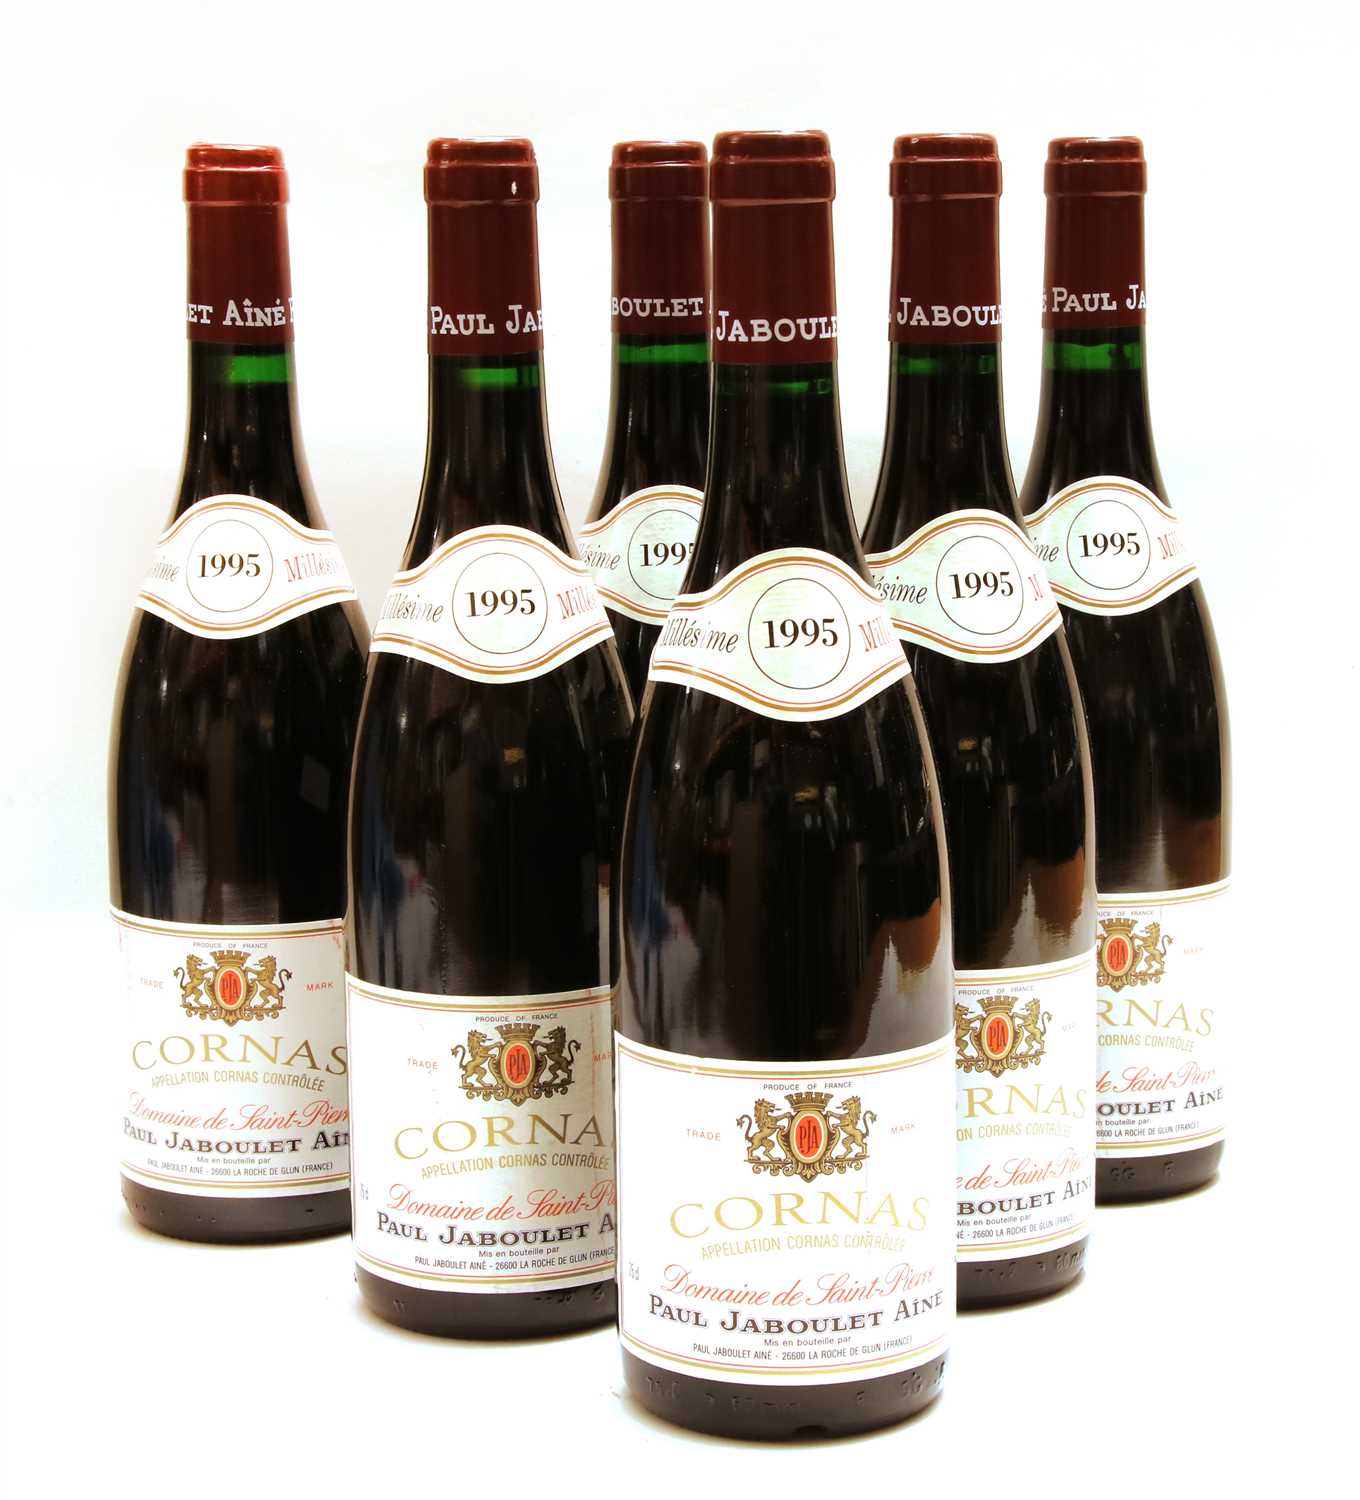 Lot 164 - Paul Jaboulet Aîné, Domaine de Saint-Pierre, Cornas, 1995, six bottles